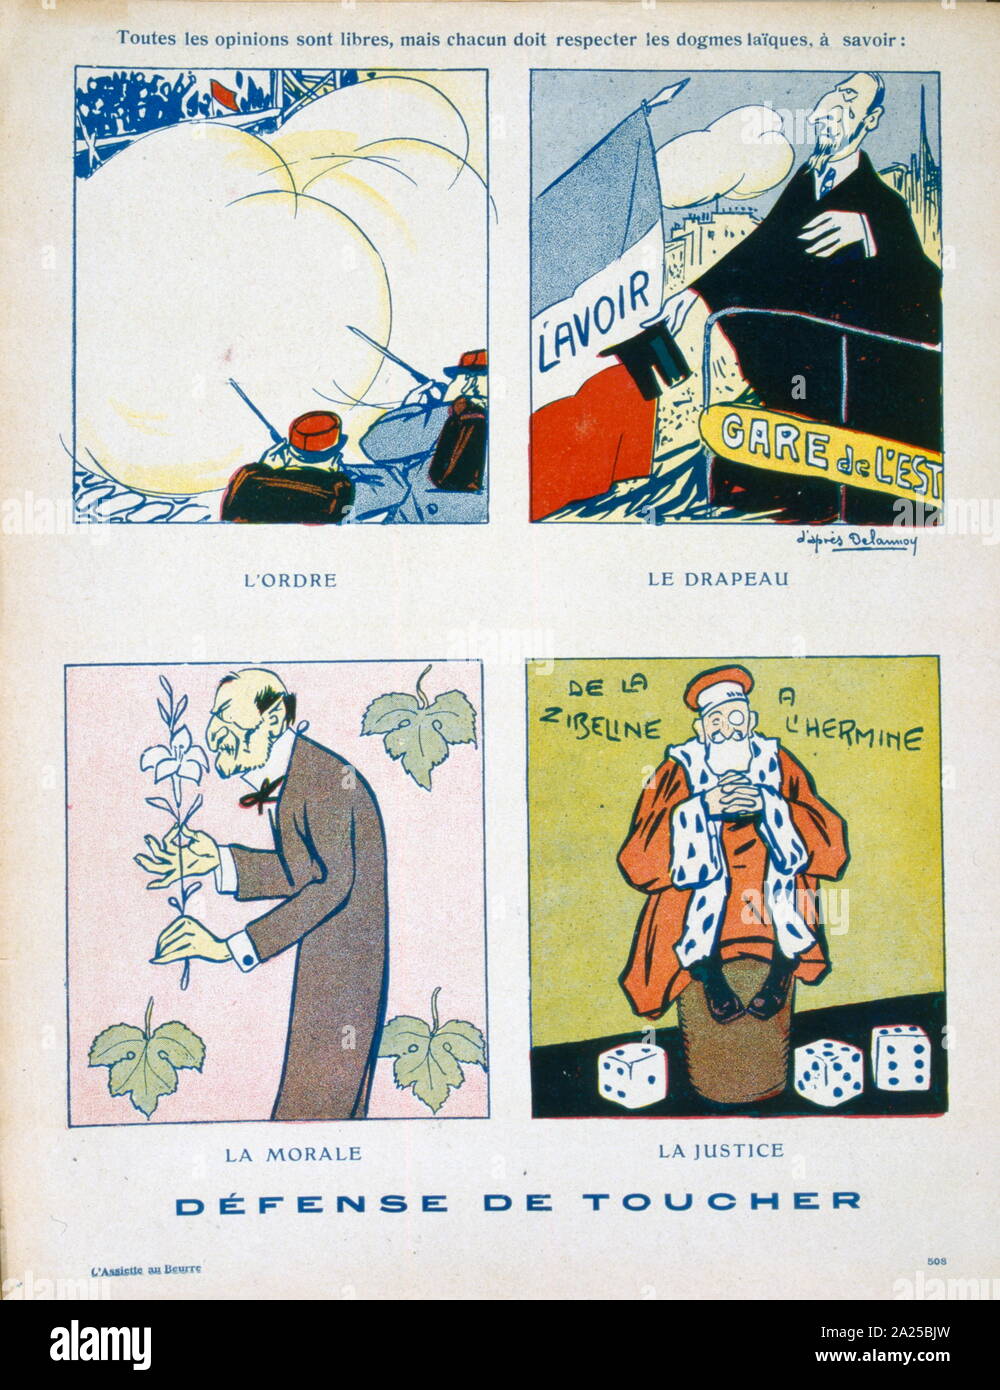 Französische satirische Abbildung, zeigt die Notwendigkeit, die vier Grundpfeiler der französischen Gesellschaft unberührt zu lassen. Moral, Gerechtigkeit, Ordnung und die Flagge. 1908 Stockfoto